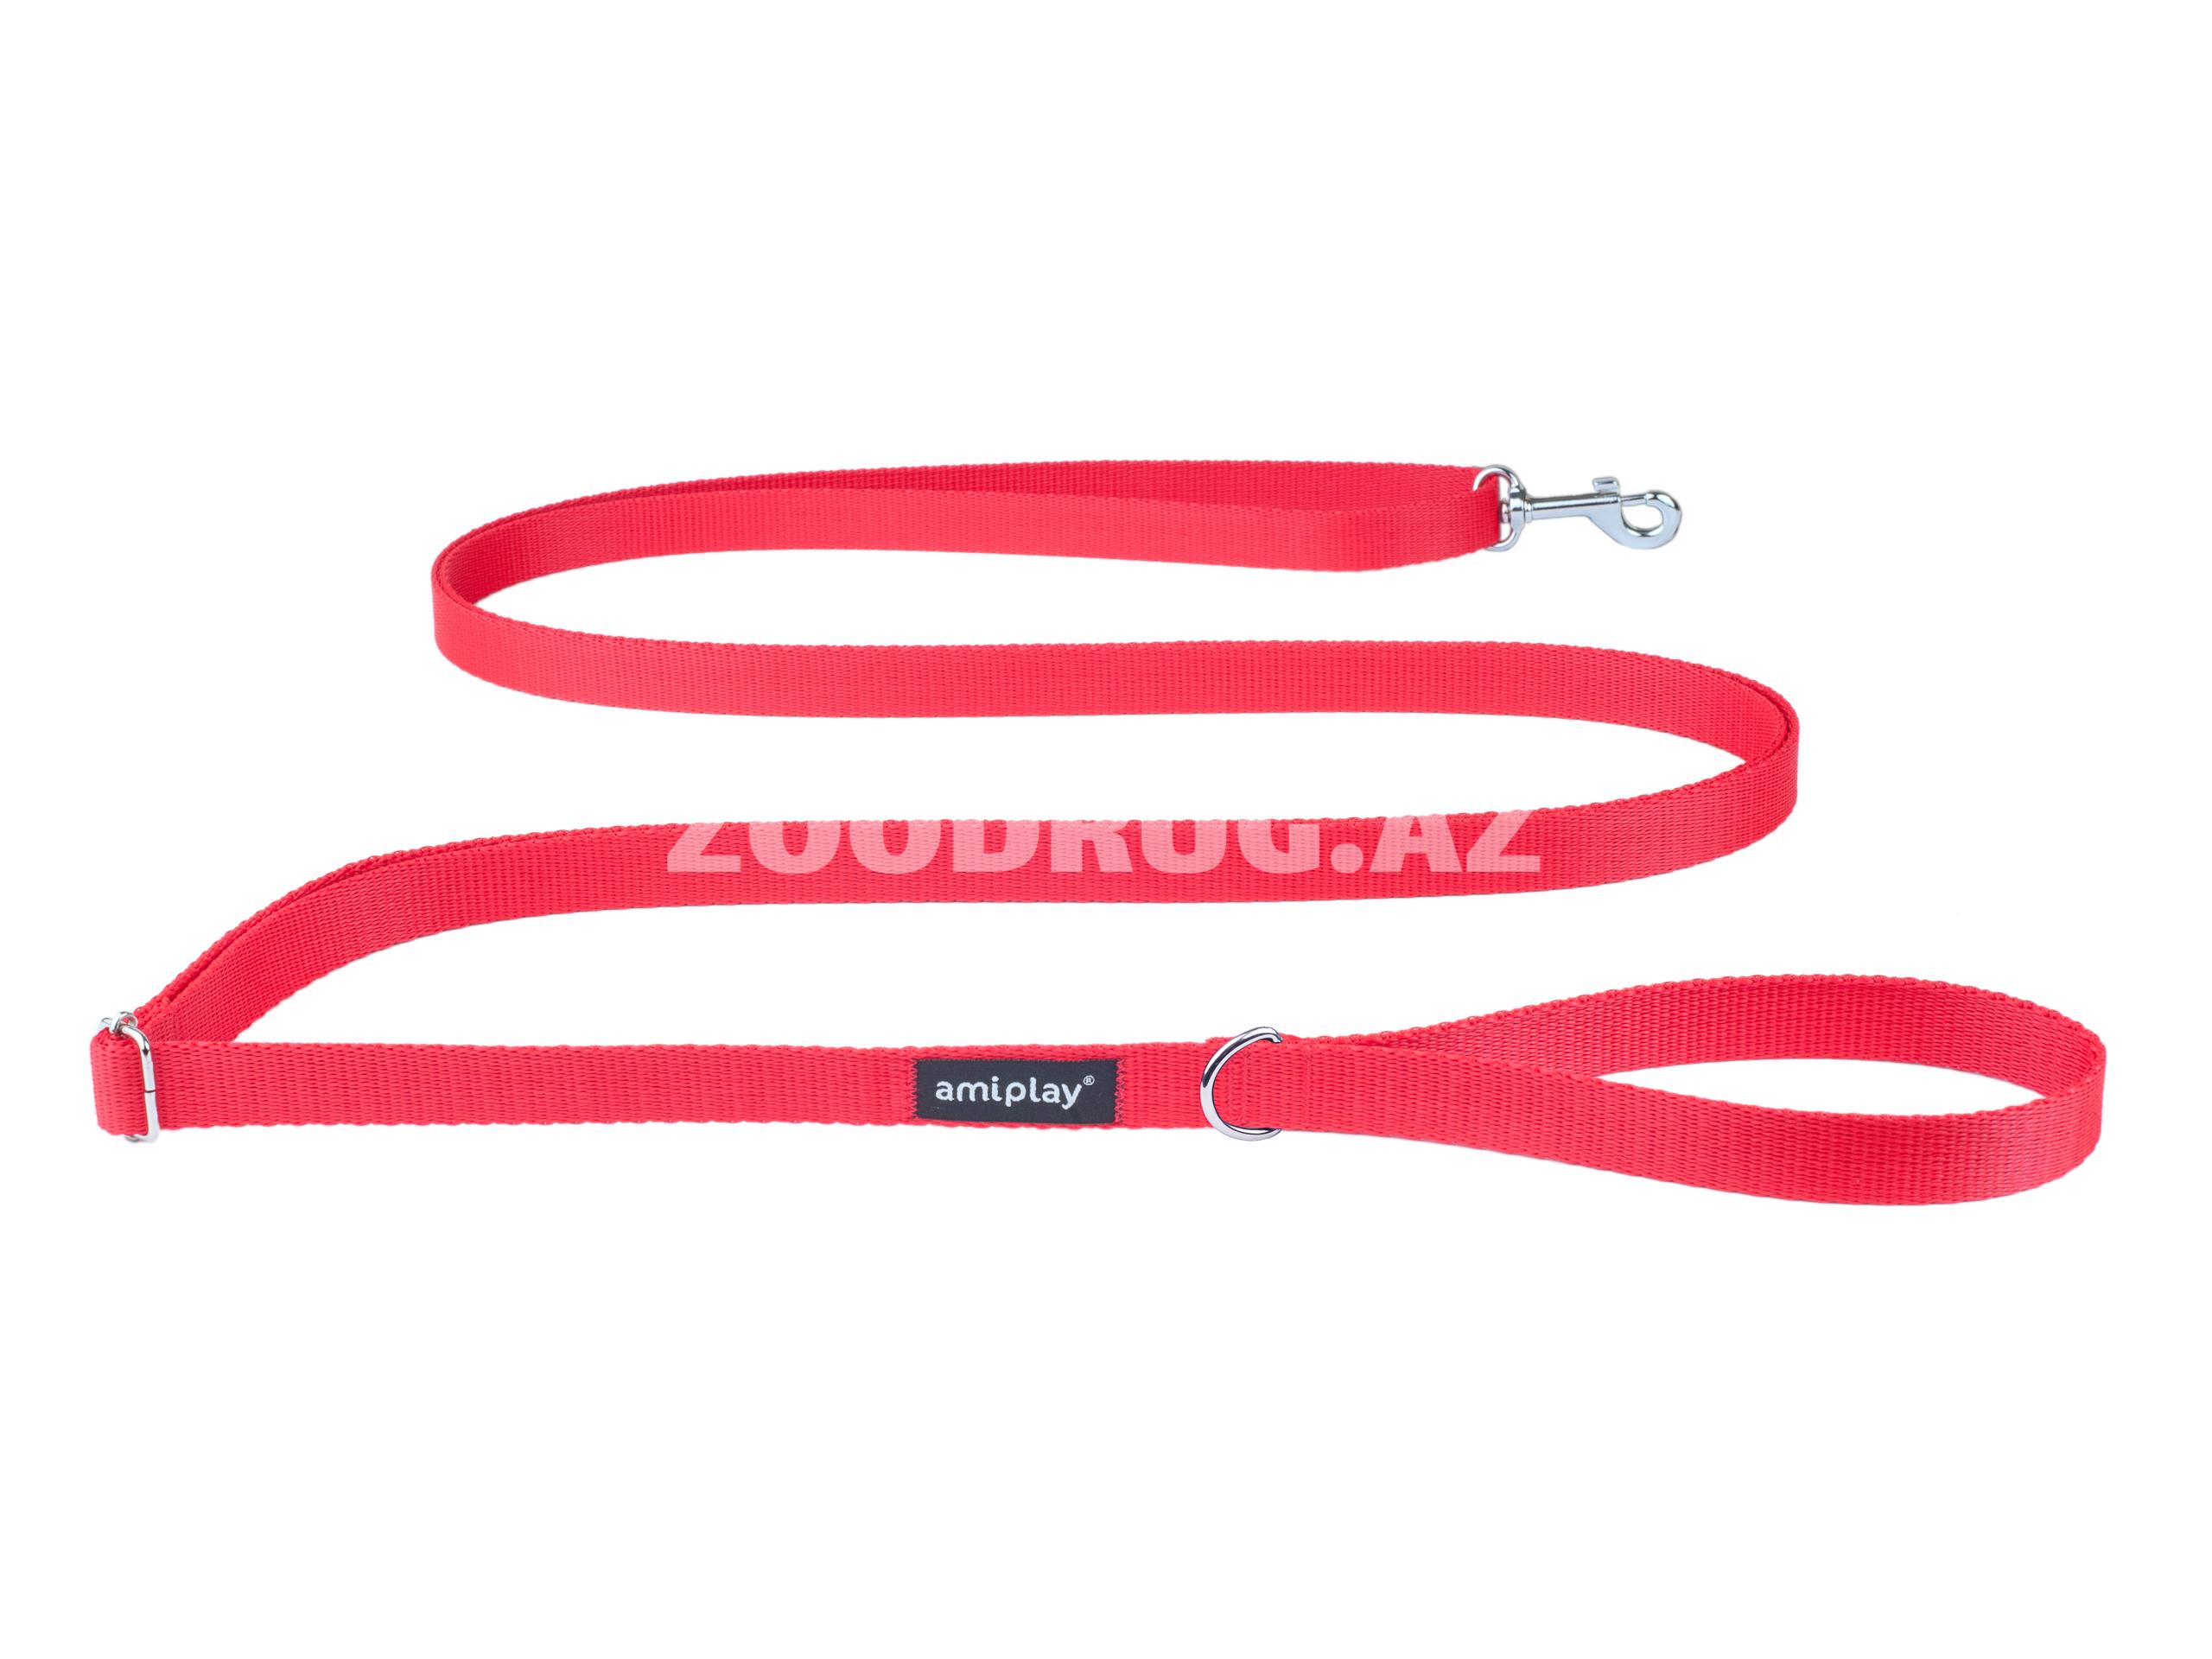 Поводок Amiplay Adjustable Leash. Цвет: Красный. Размер L. Длина: 100-200 см.